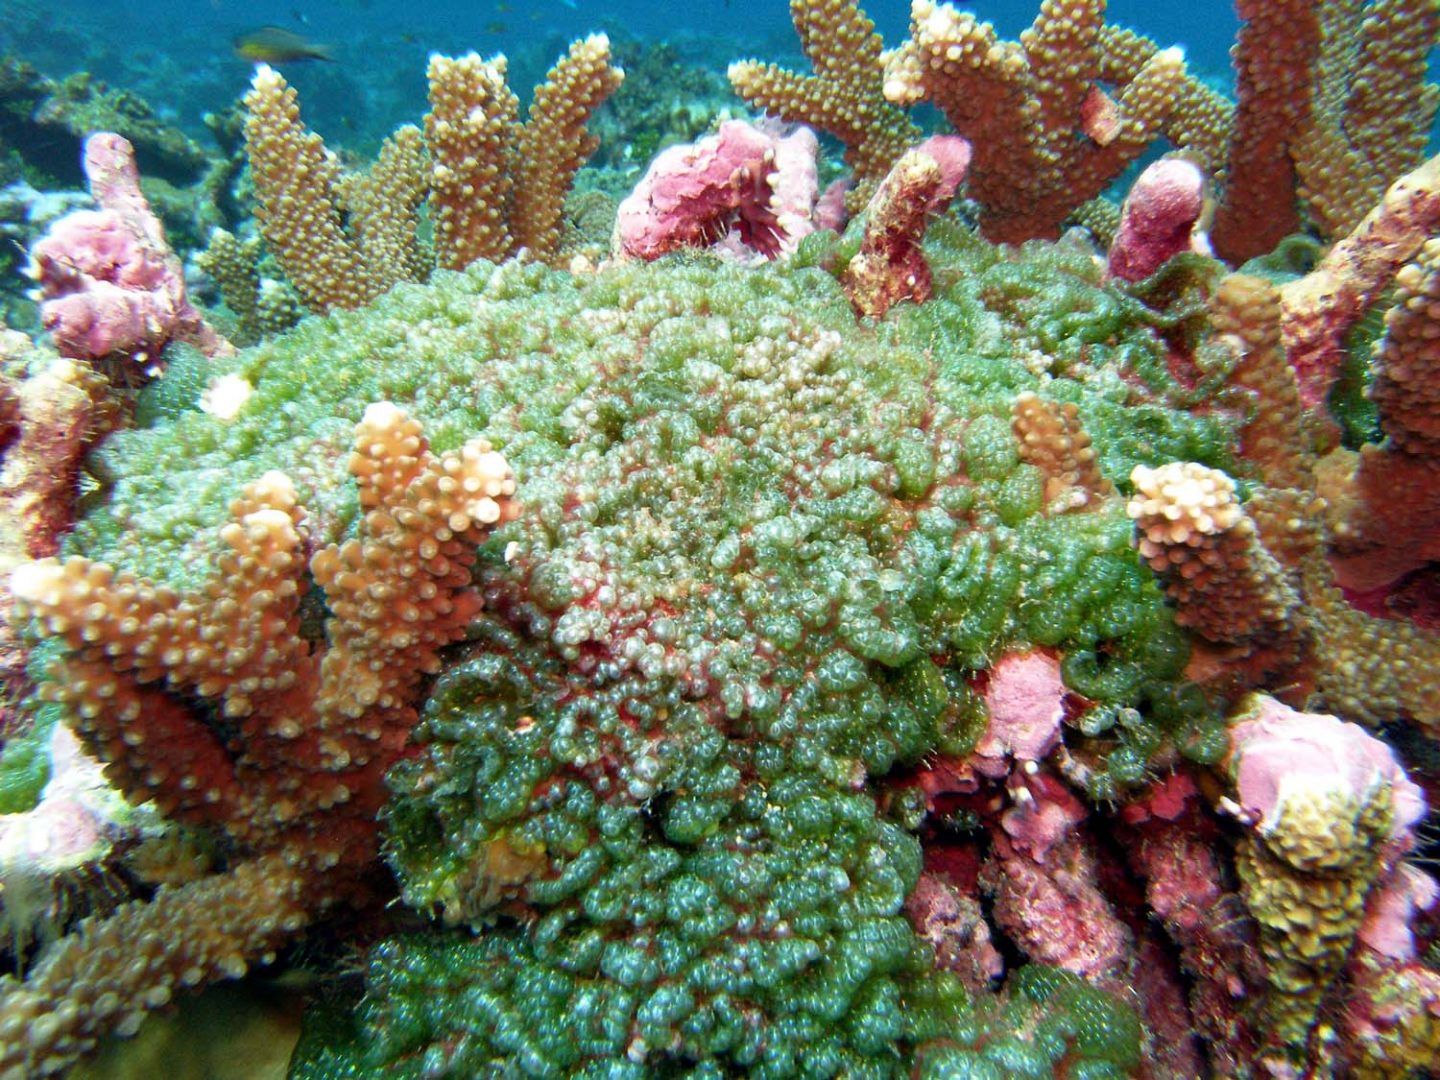 ليس الانسان وحده من يتعامل بمبدا المنفعة العلاقة الحميمة بين البكتيريا و الشعاب المرجانية مثالا